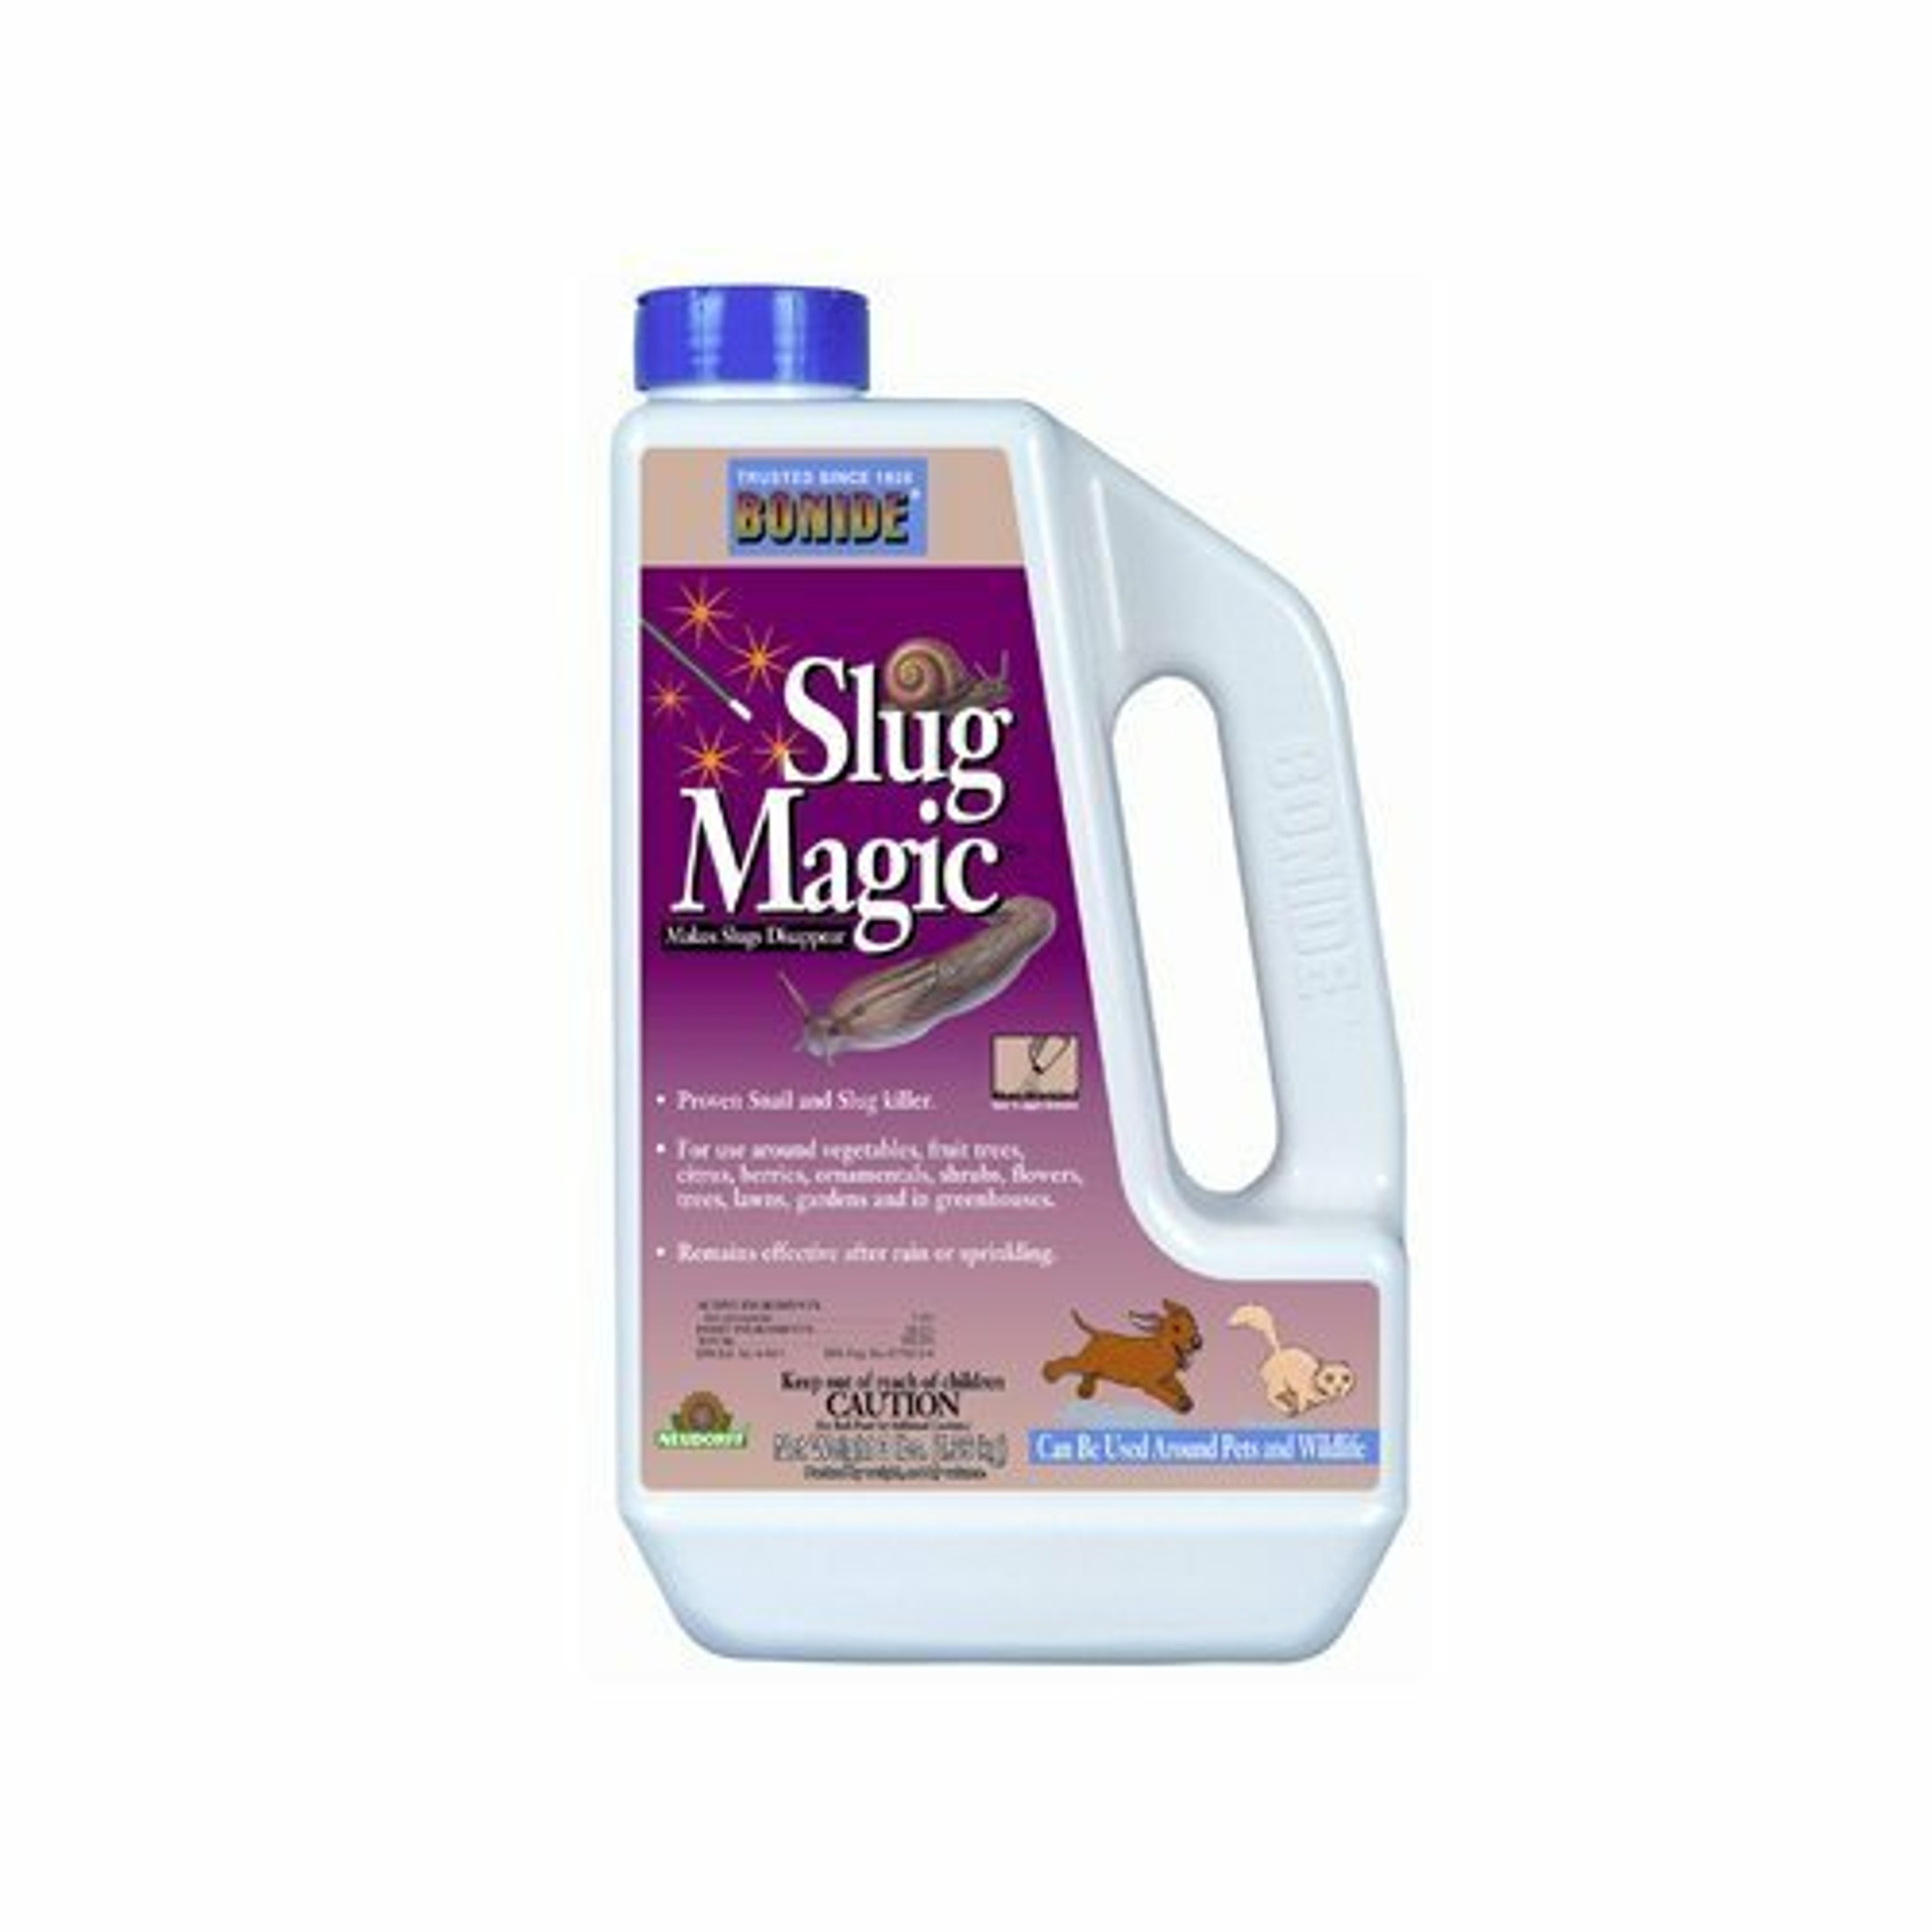 Bonide Slug Magic Snail & Slug Killer Granules, 3lbs